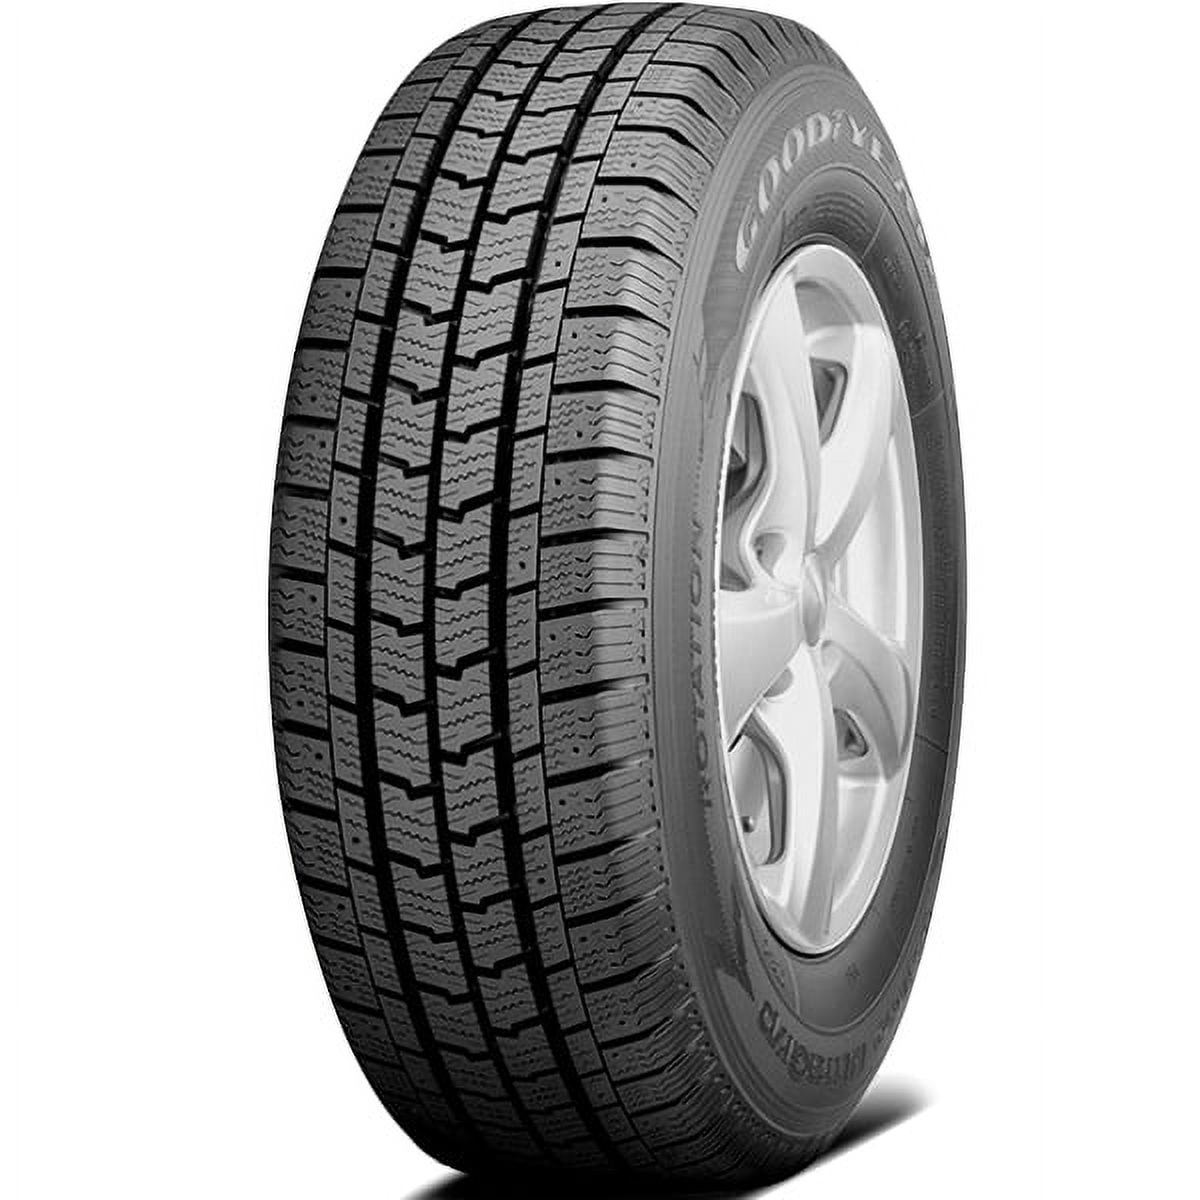 Goodyear Tire Grip 118 225/75R16 Ultra Cargo 2 N